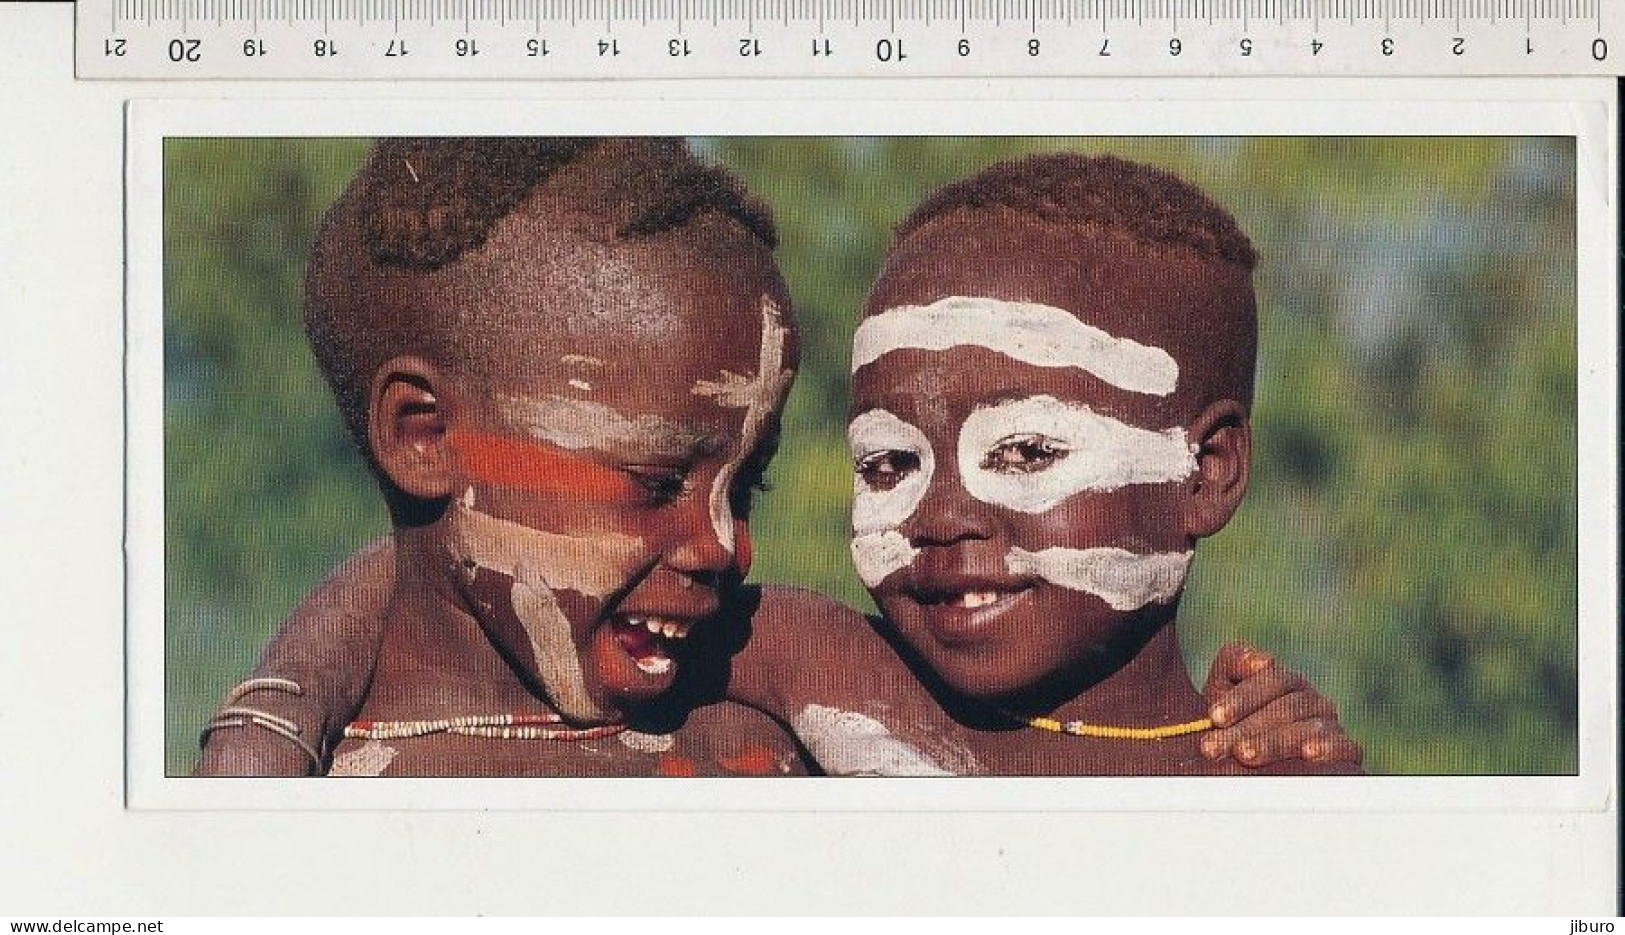 Carte Double Souple " Agir Ici " Format 21x10 Cm Les Meilleurs Amis Ethiopie Enfants ( Fisher Beckwith Estall ) - Ethiopie